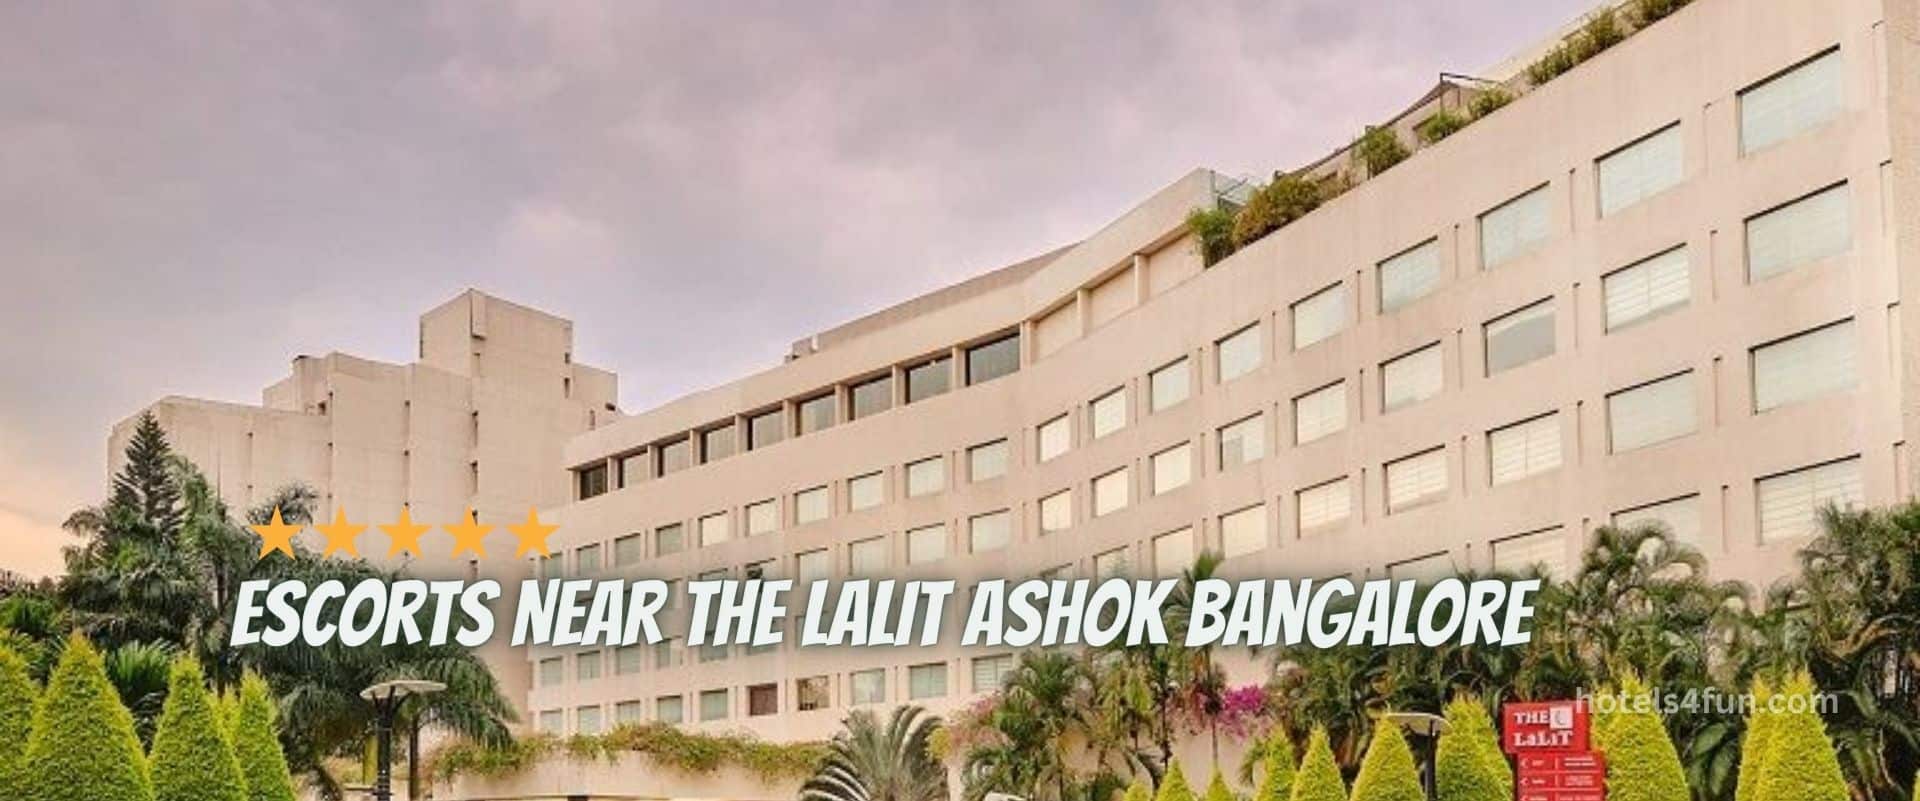 The Lalit Asho Hotel Bangalore